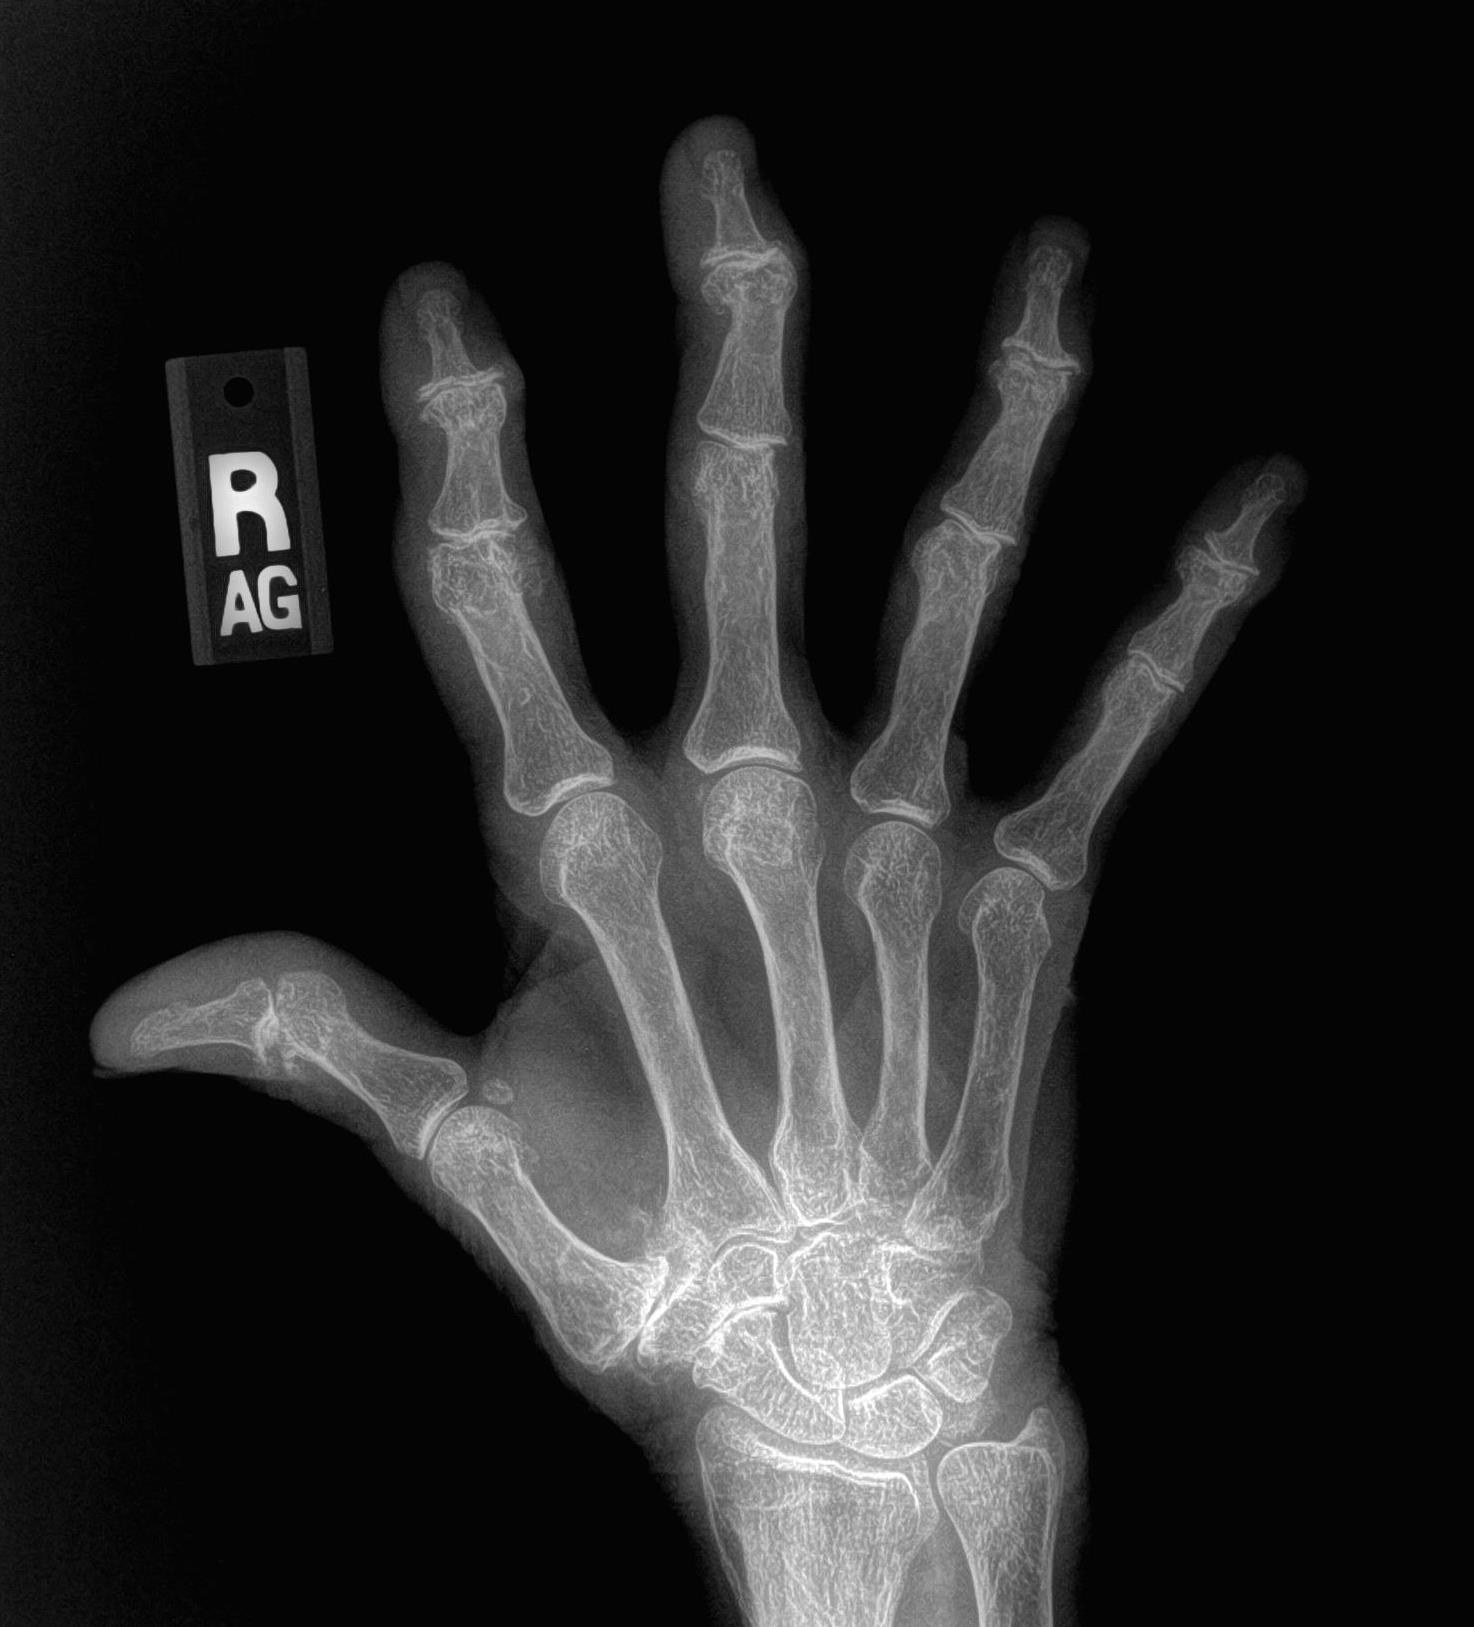 early osteoarthritis hands